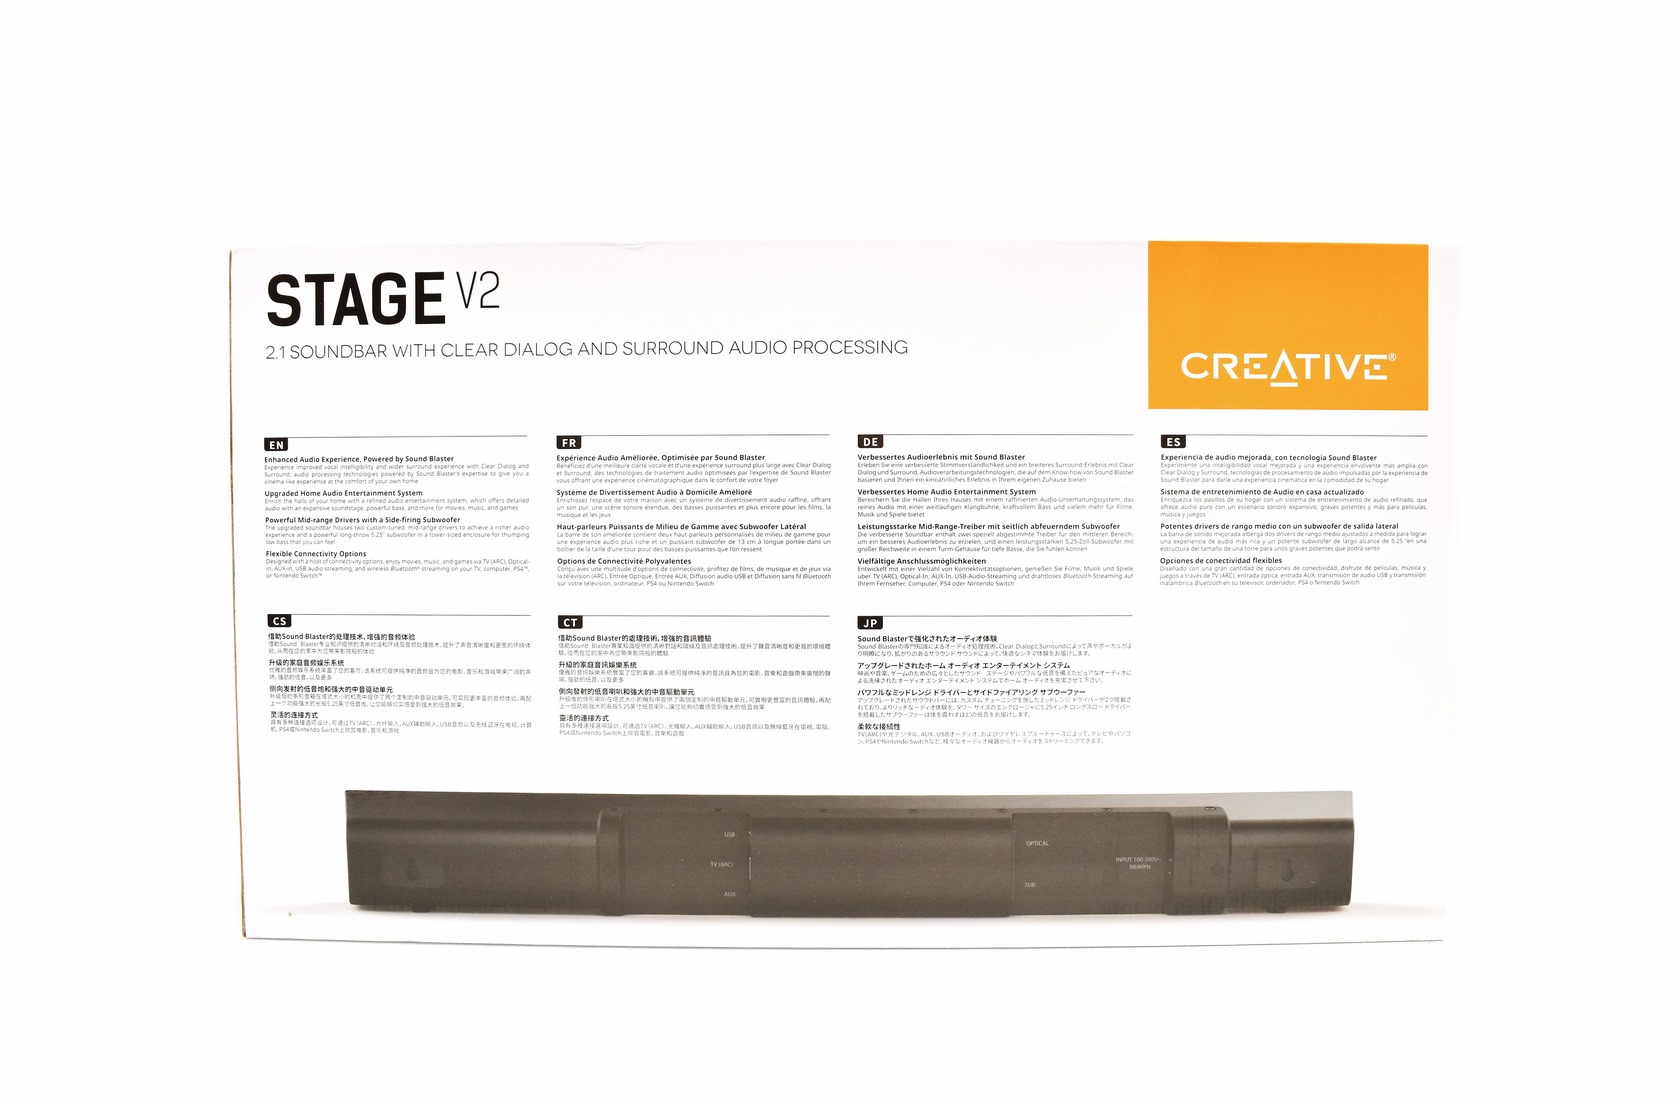 Soundbar Creative V2 Stage Review 2.1